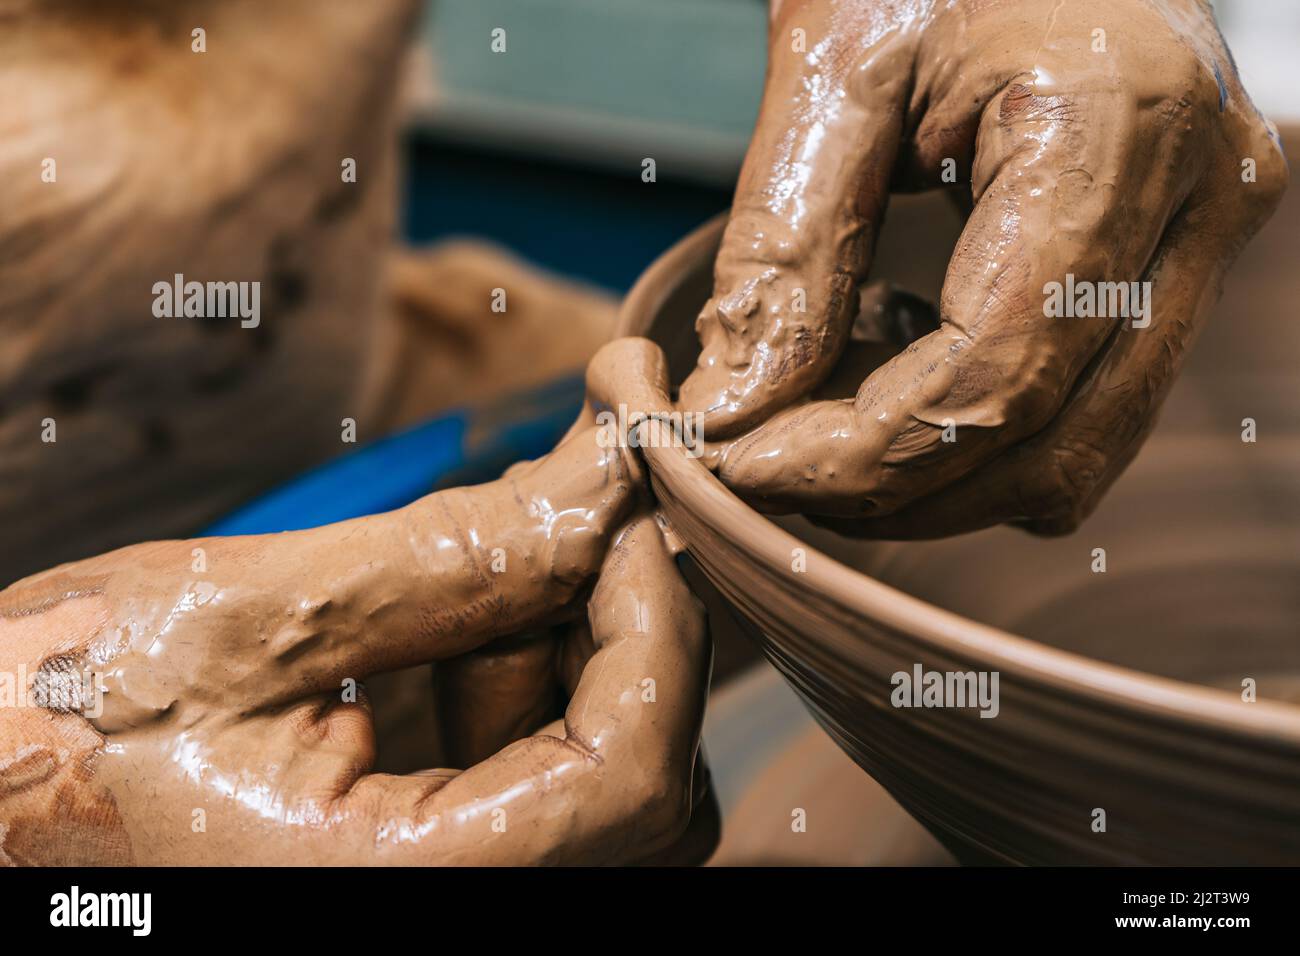 Les mains habiles d'une argile de travail de potier sur une roue de potier. L'argile prend la forme que le potier lui donne avec le ton de terre cuite de l'argile. Banque D'Images